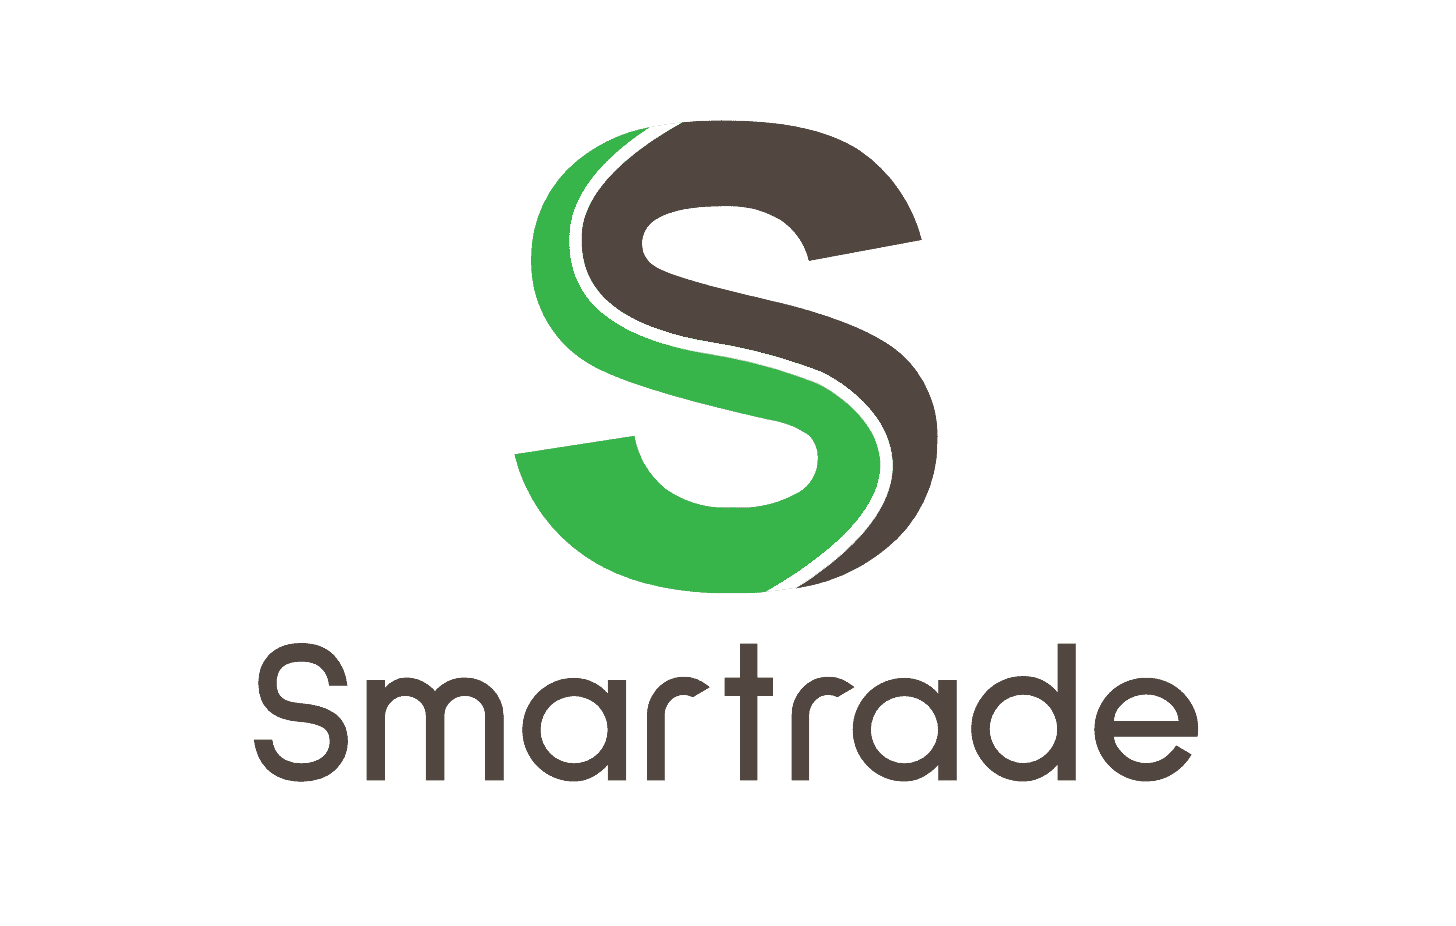 smartradd Logo